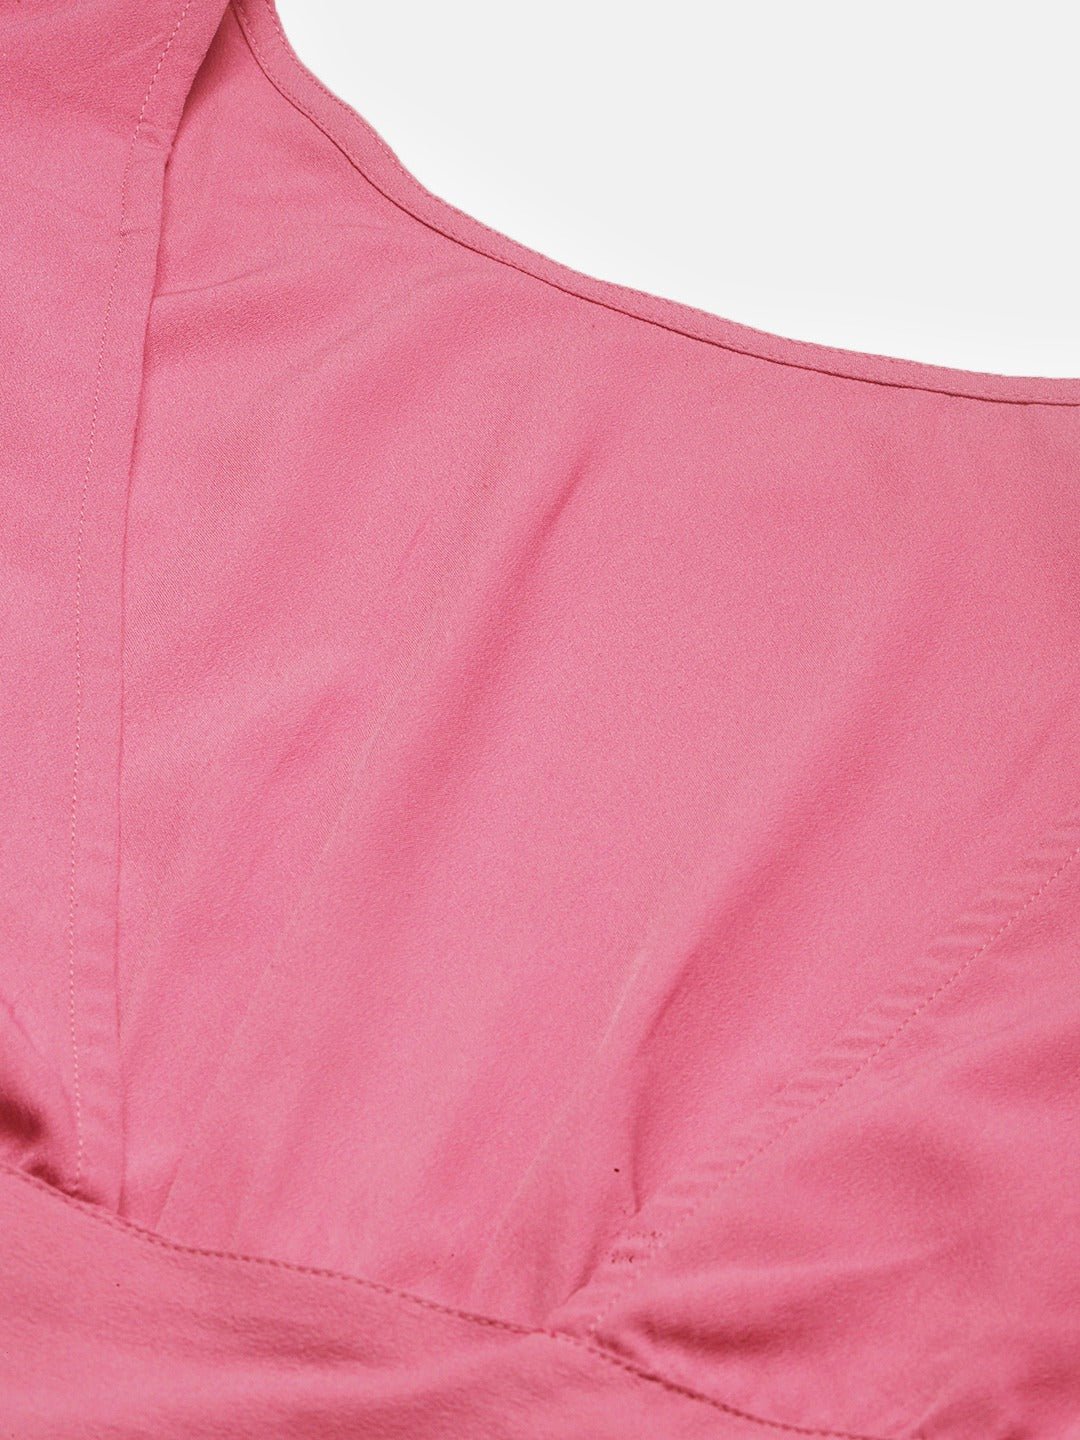 Folk Republic Women Solid Rose Pink Open-Back Blouson Crop Top - #folk republic#